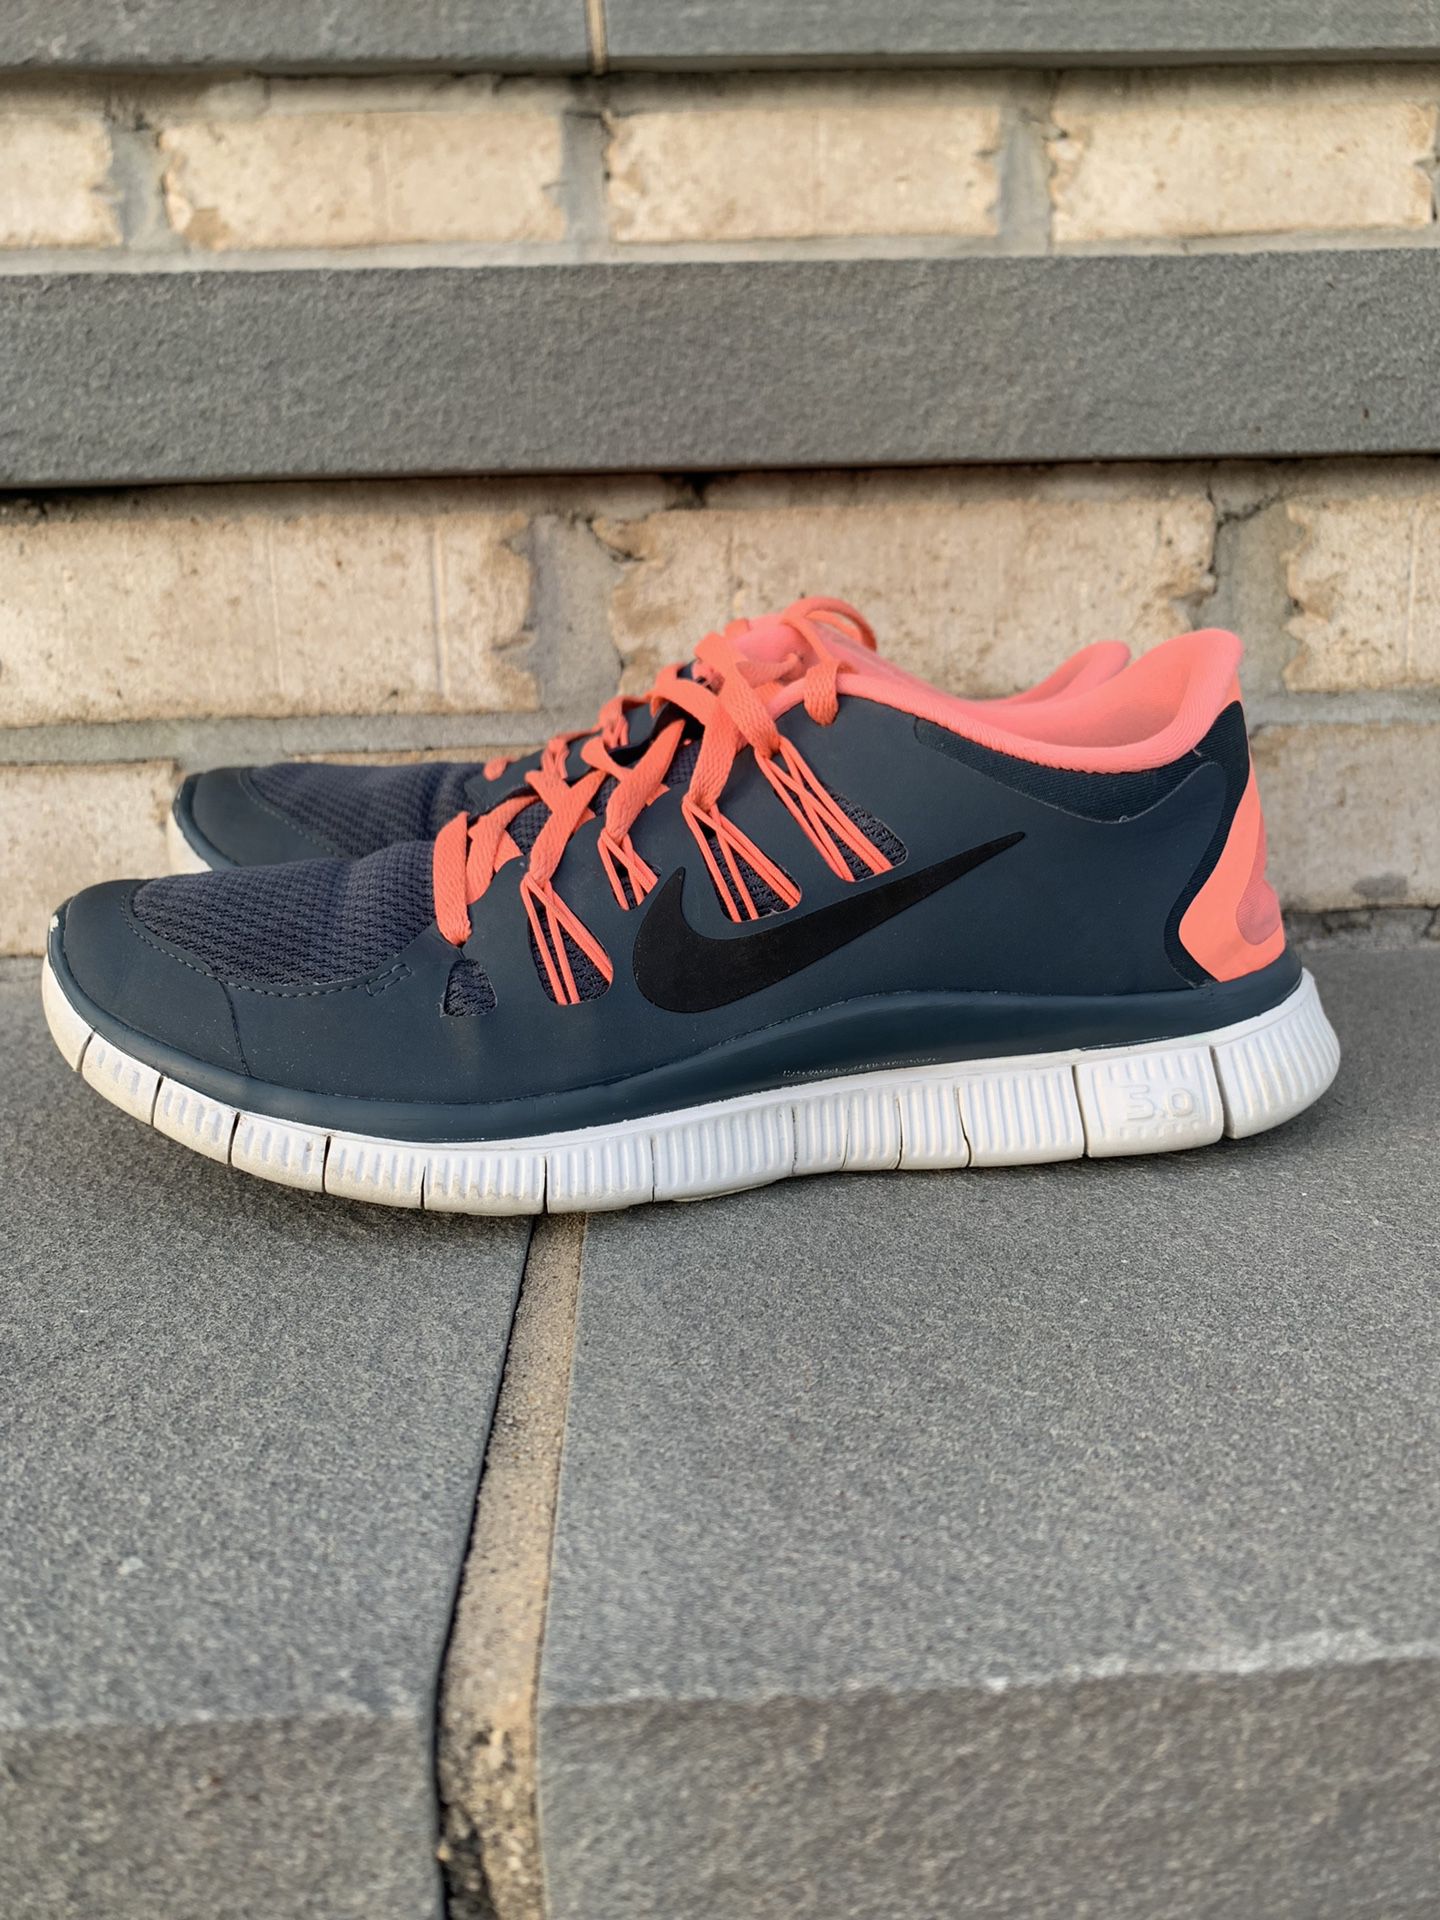 Nike Free Run 5.0 Women’s Running Shoe